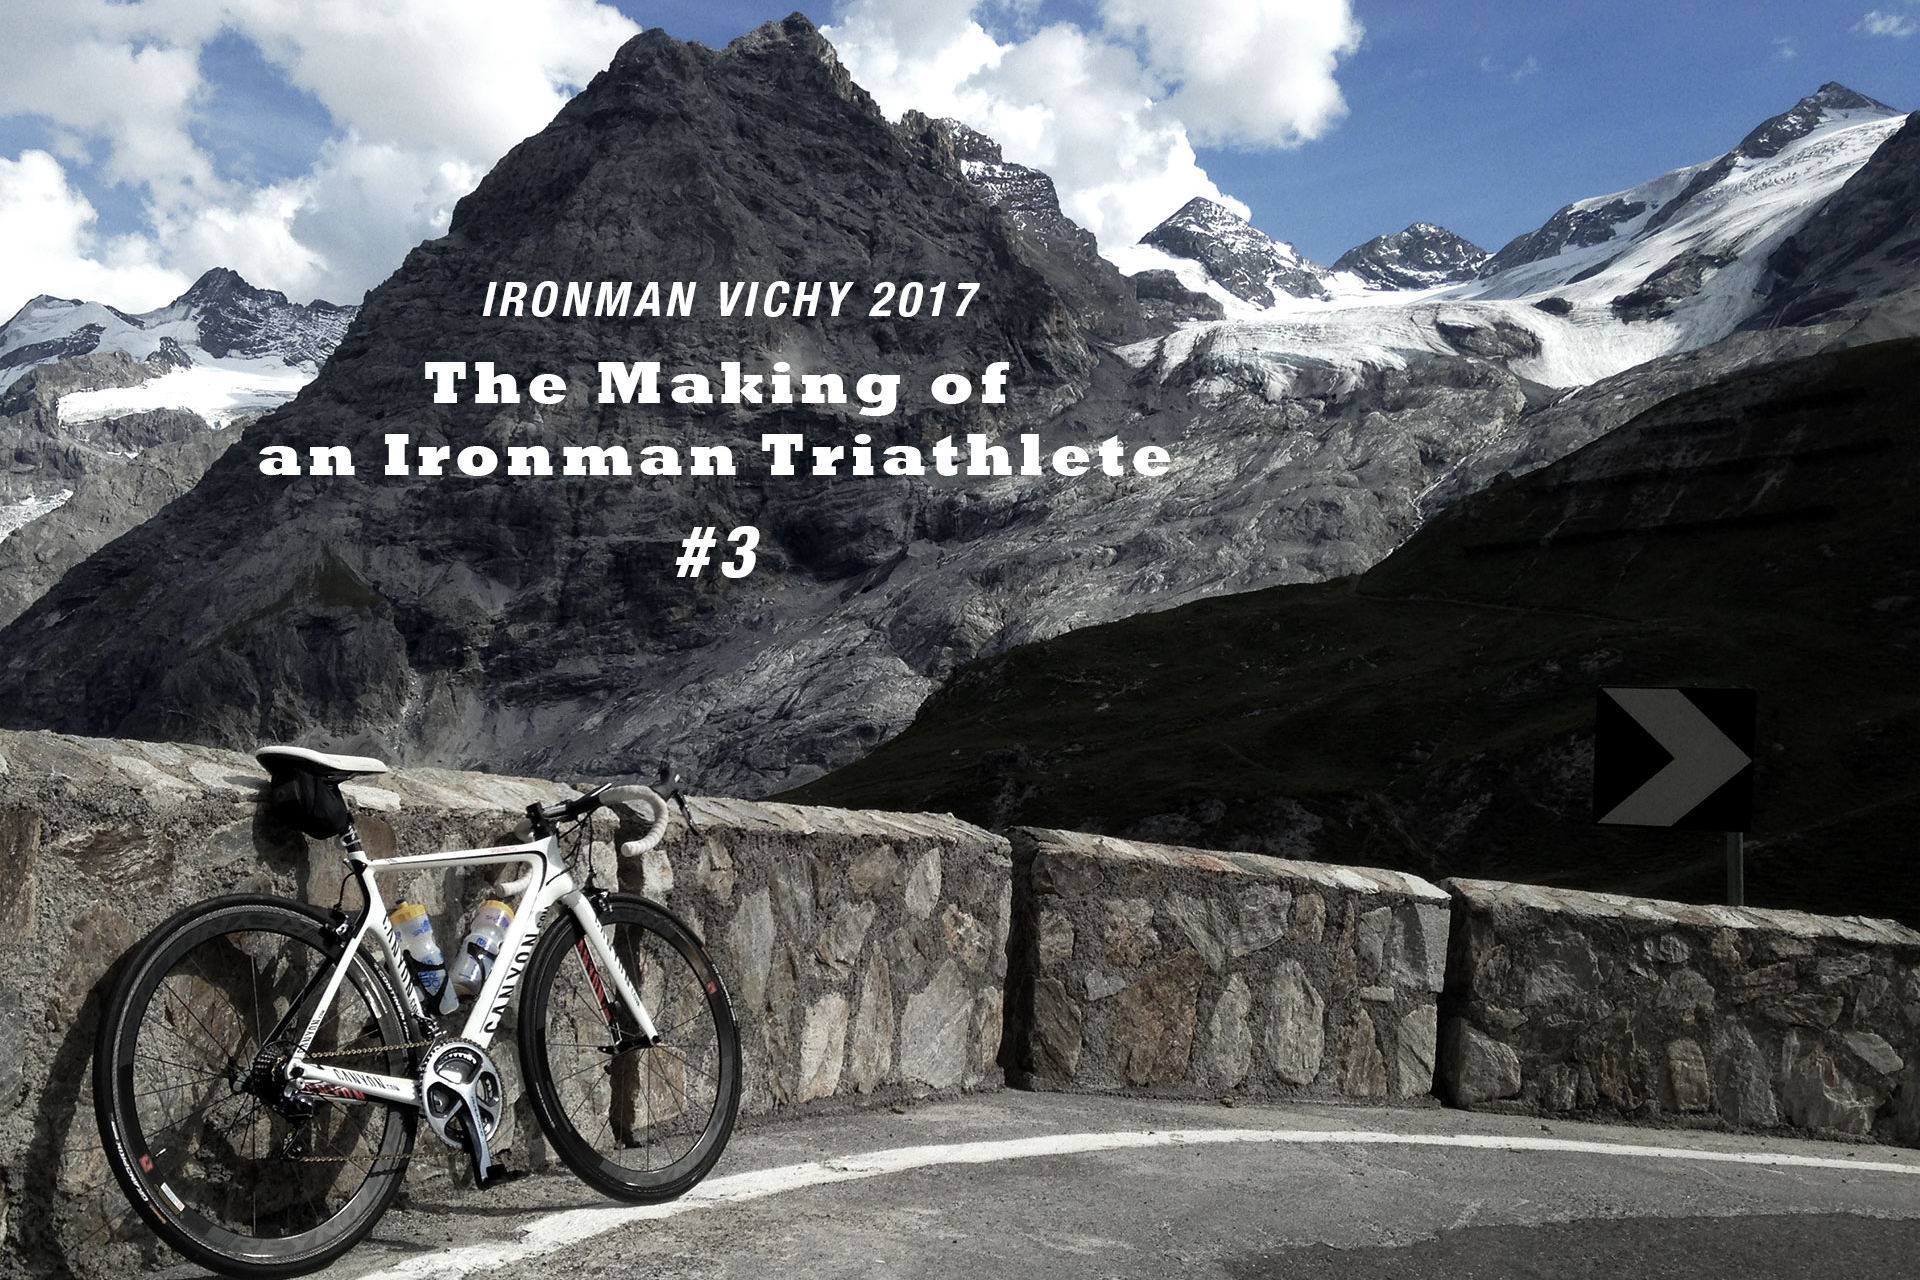 IRONMAN VICHY 2017 The Making of an Ironman Triathlete #3 / Spektakuläres Panorama von Südflanke des Stilfser Jochs auf das Ortler Massiv © Stefan Drexl